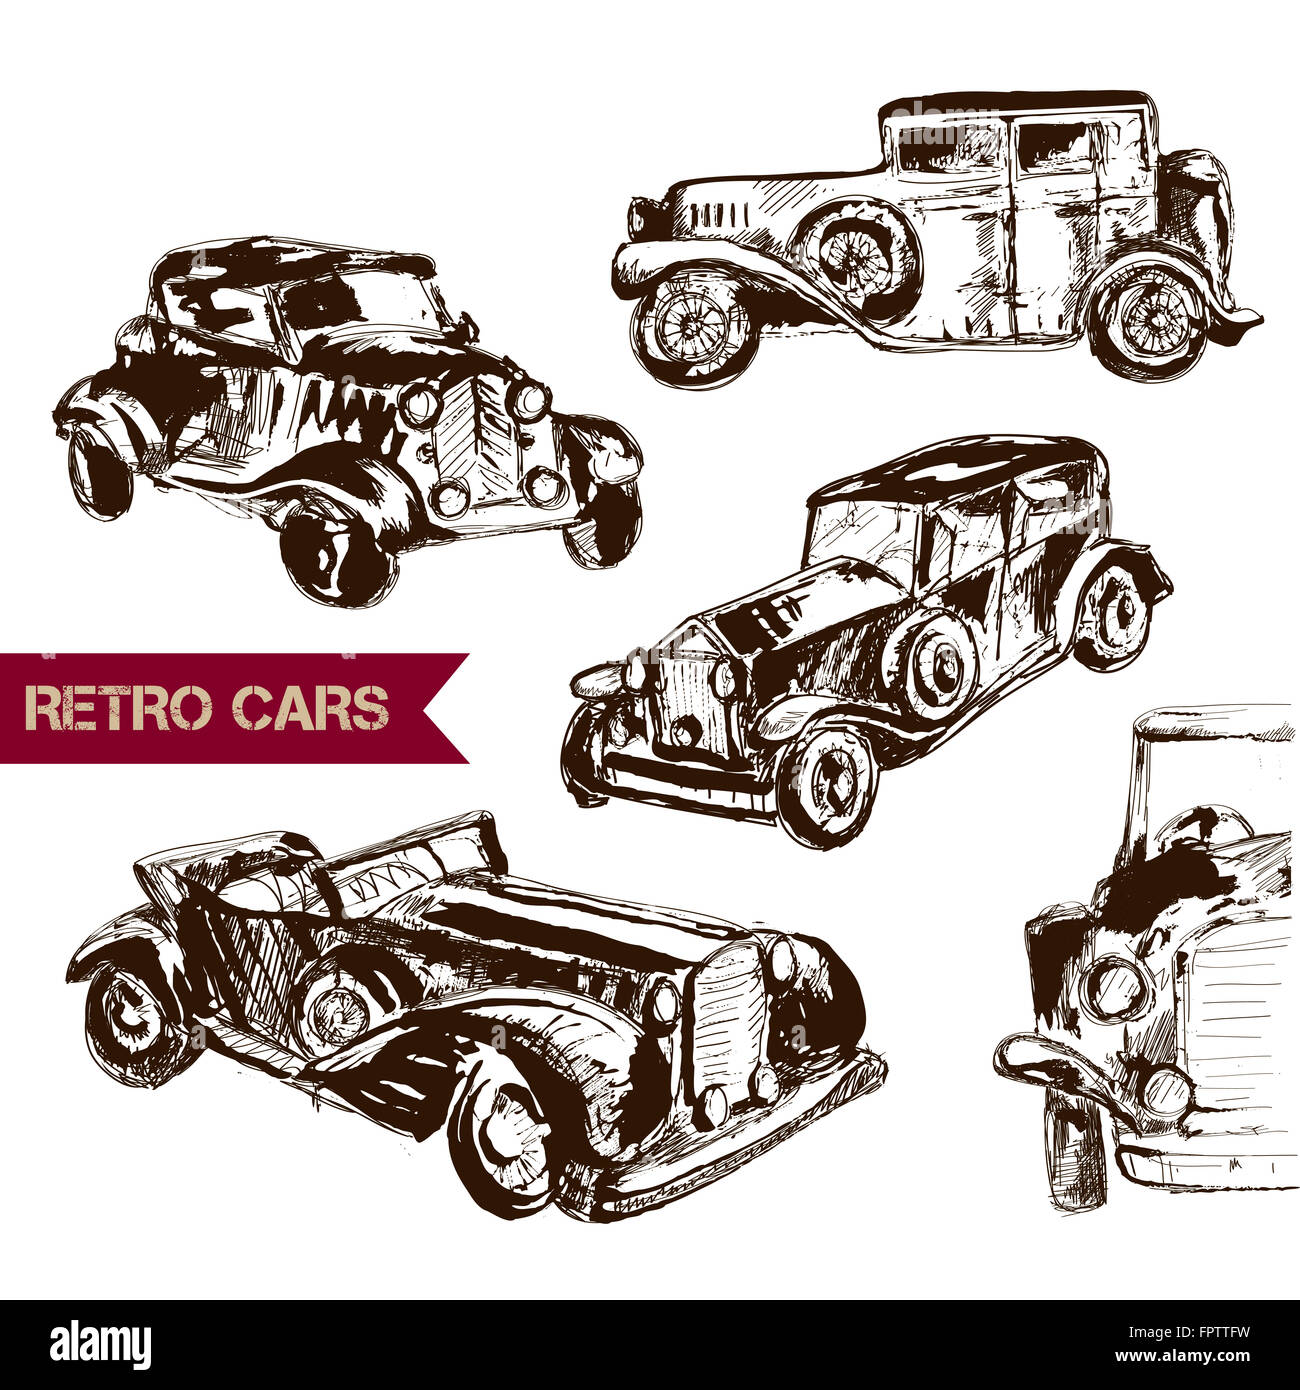 Retro car sketch for your design. Stock Photo